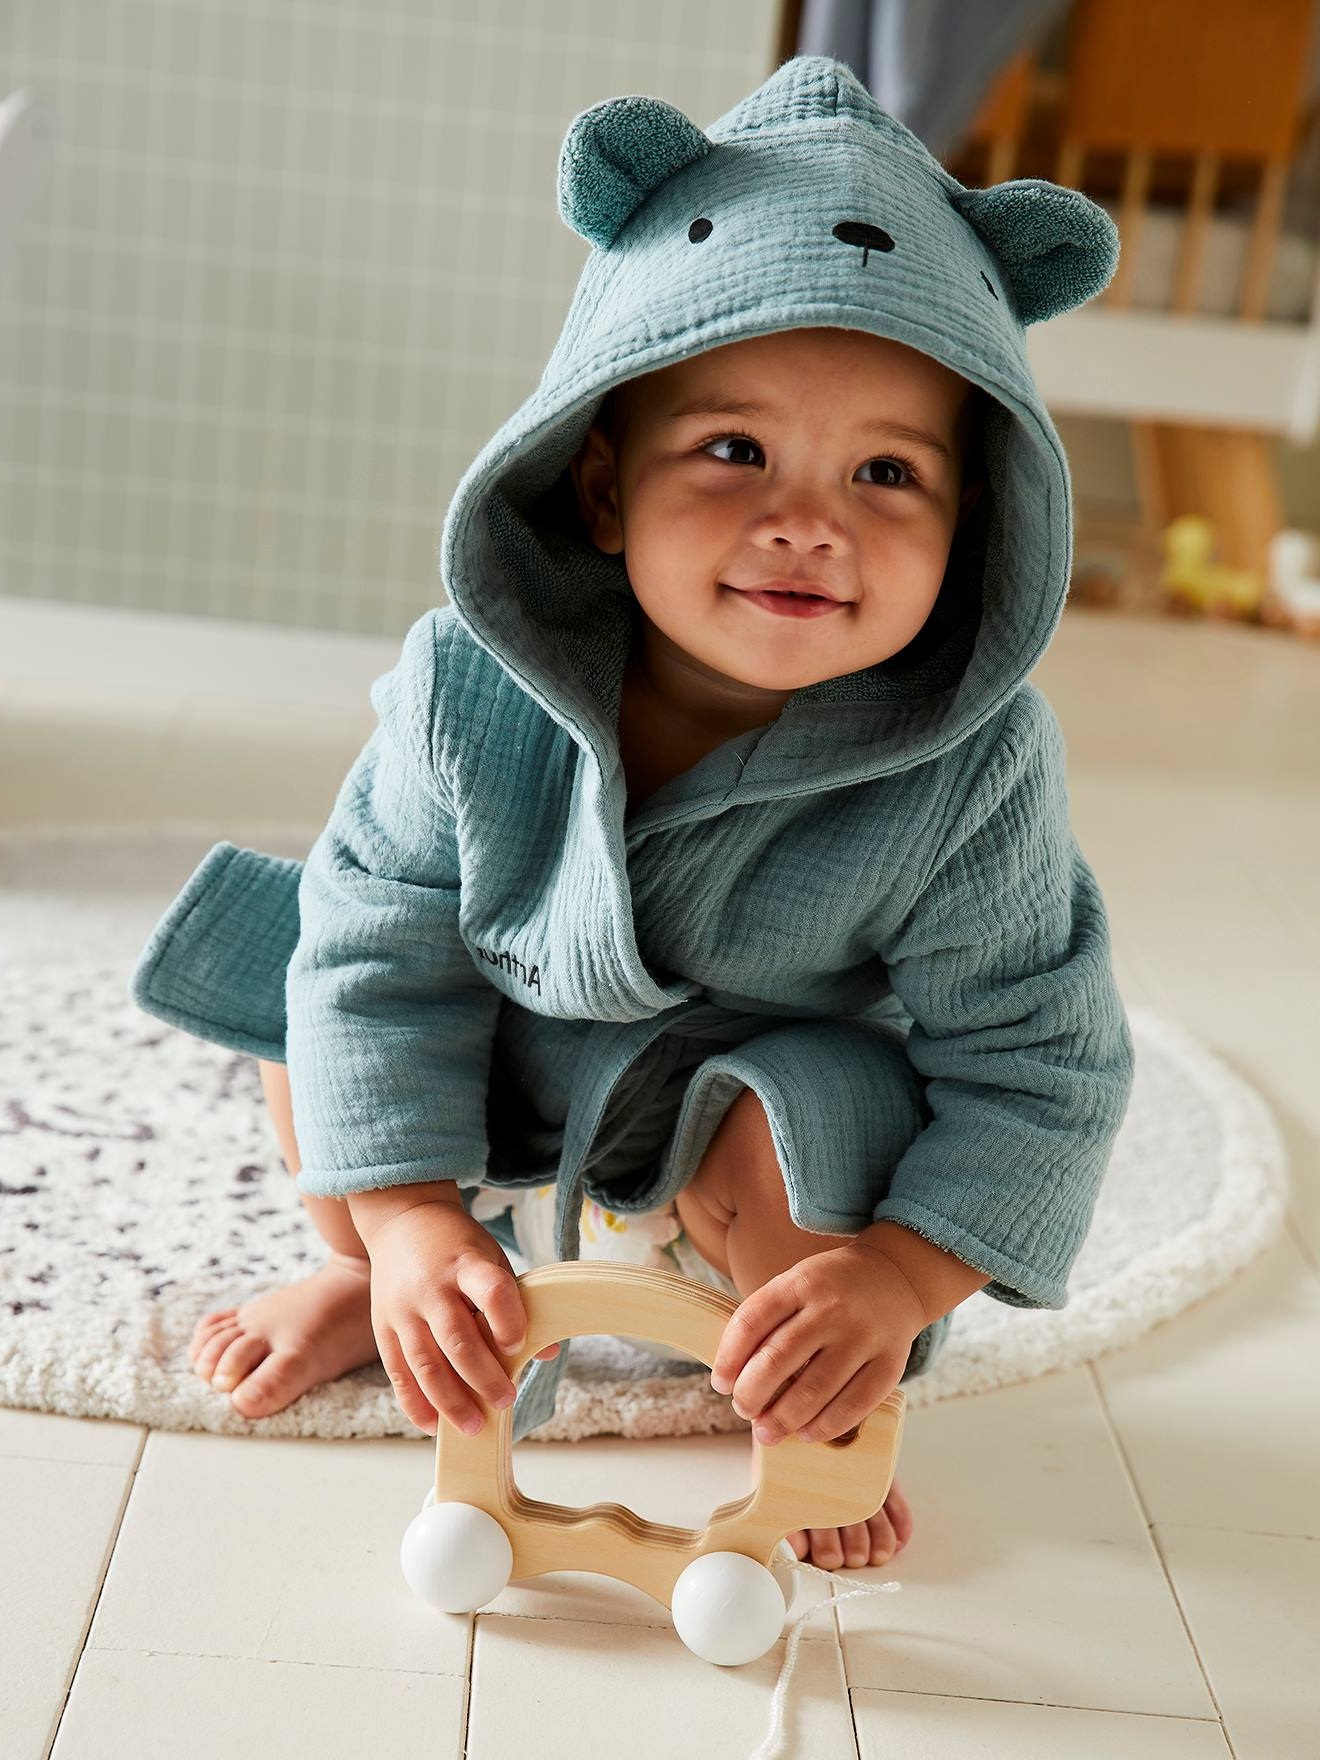 Descubre las batas bebé con diseños adorables que harán lucir aún más lindo a tu bebé